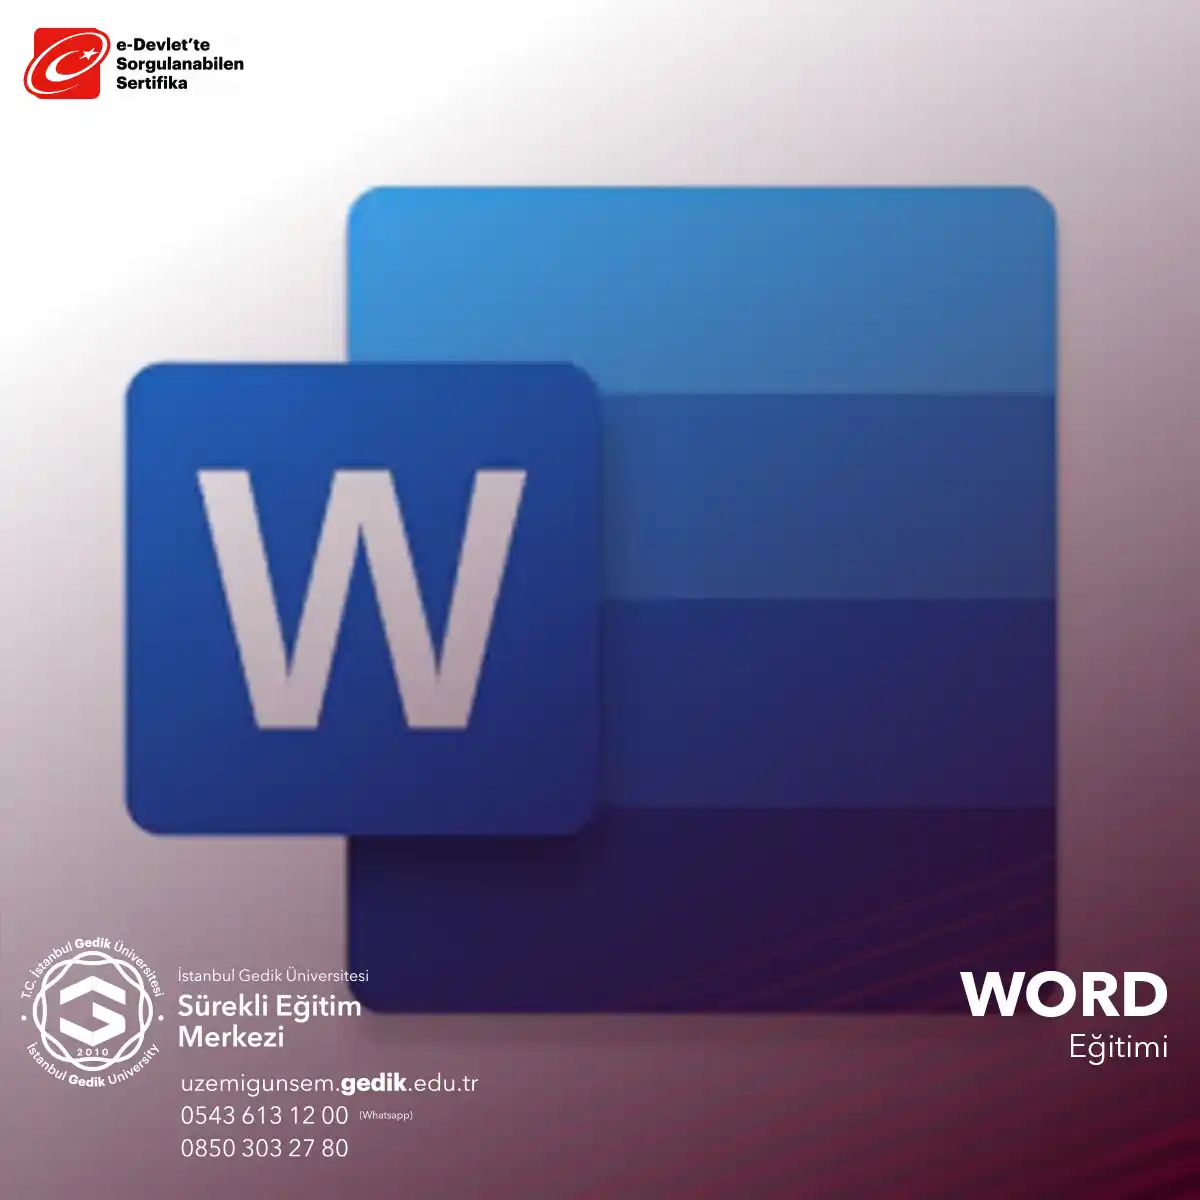 Microsoft Word, popüler bir kelime işlemci programıdır ve kullanıcıların belge oluşturma, düzenleme ve biçimlendirme gibi işlemleri gerçekleştirmesini sağlar.